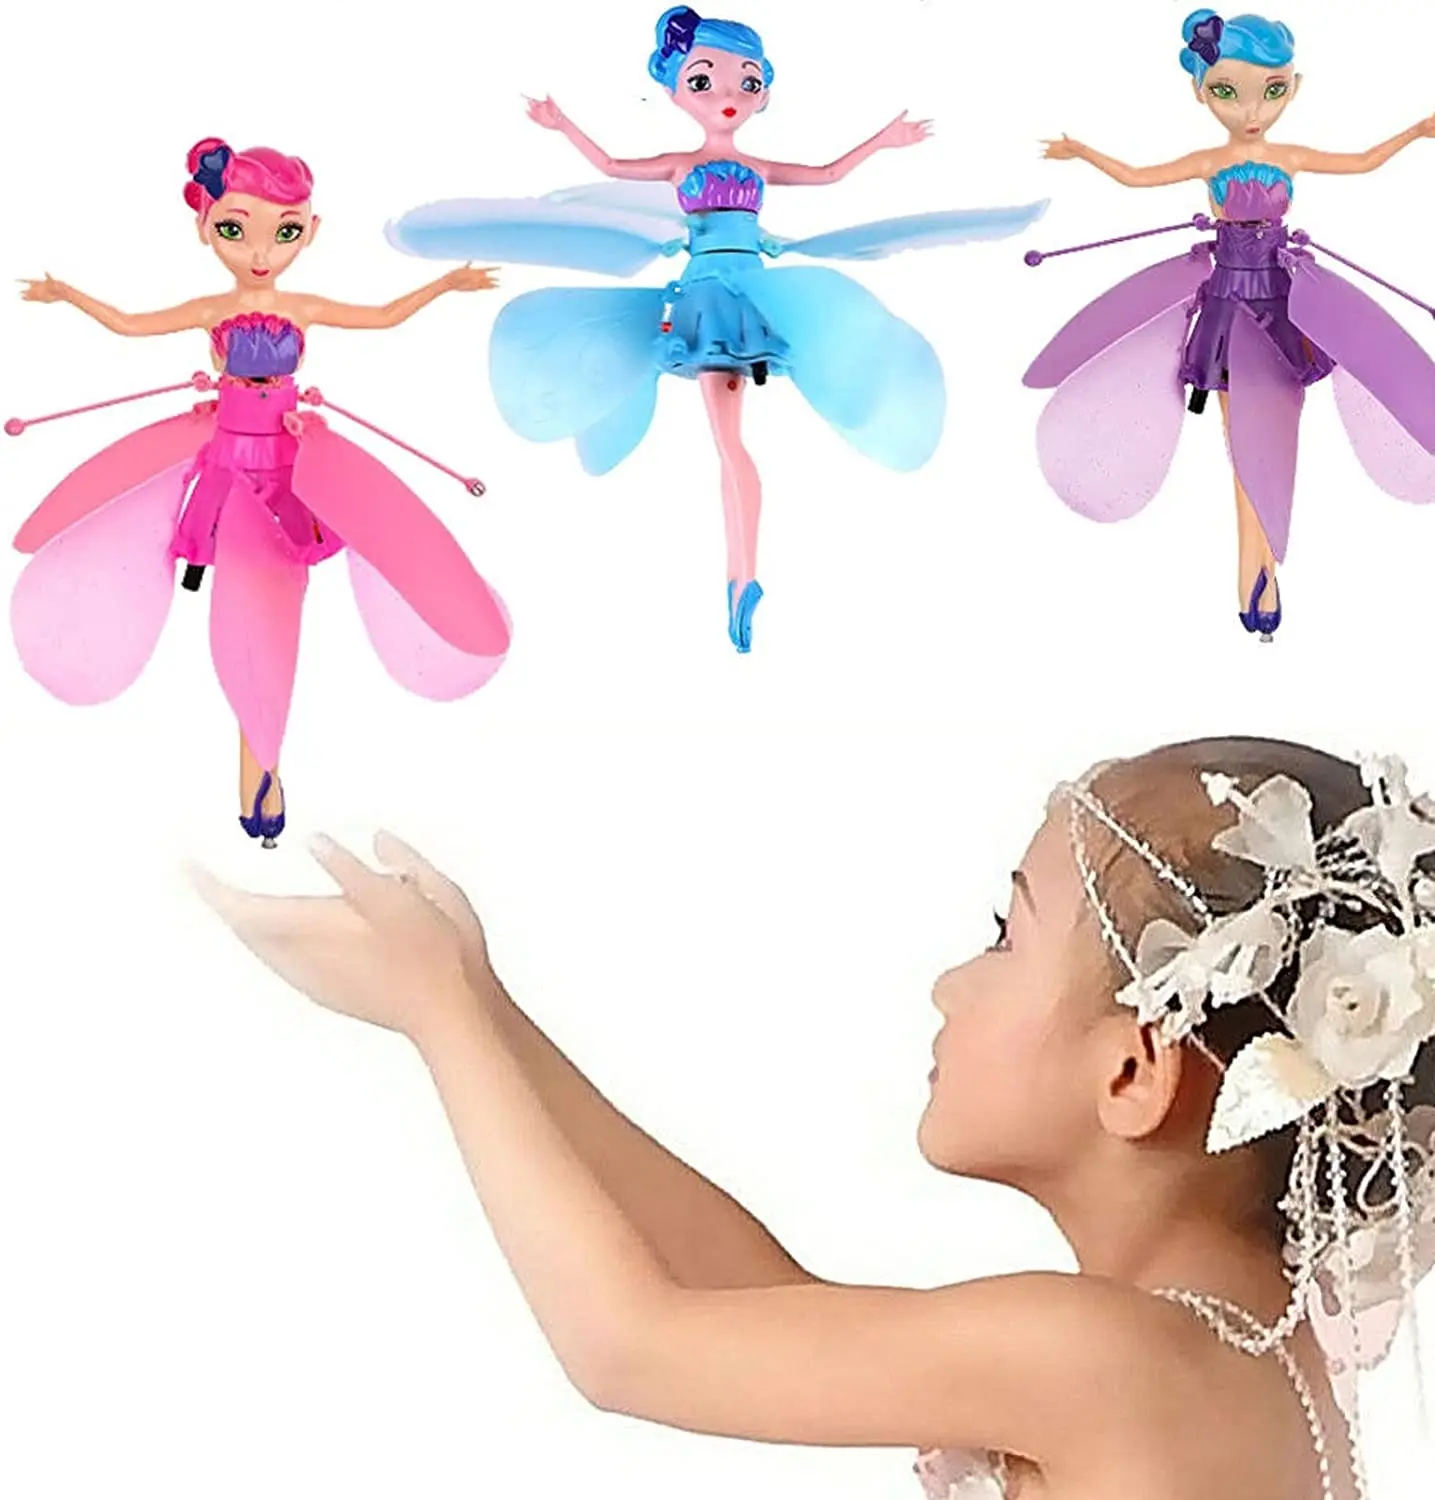 Tanie Latająca wróżka lalka, chwieje tańczące postacie, latająca lalka księżniczka, kontrola